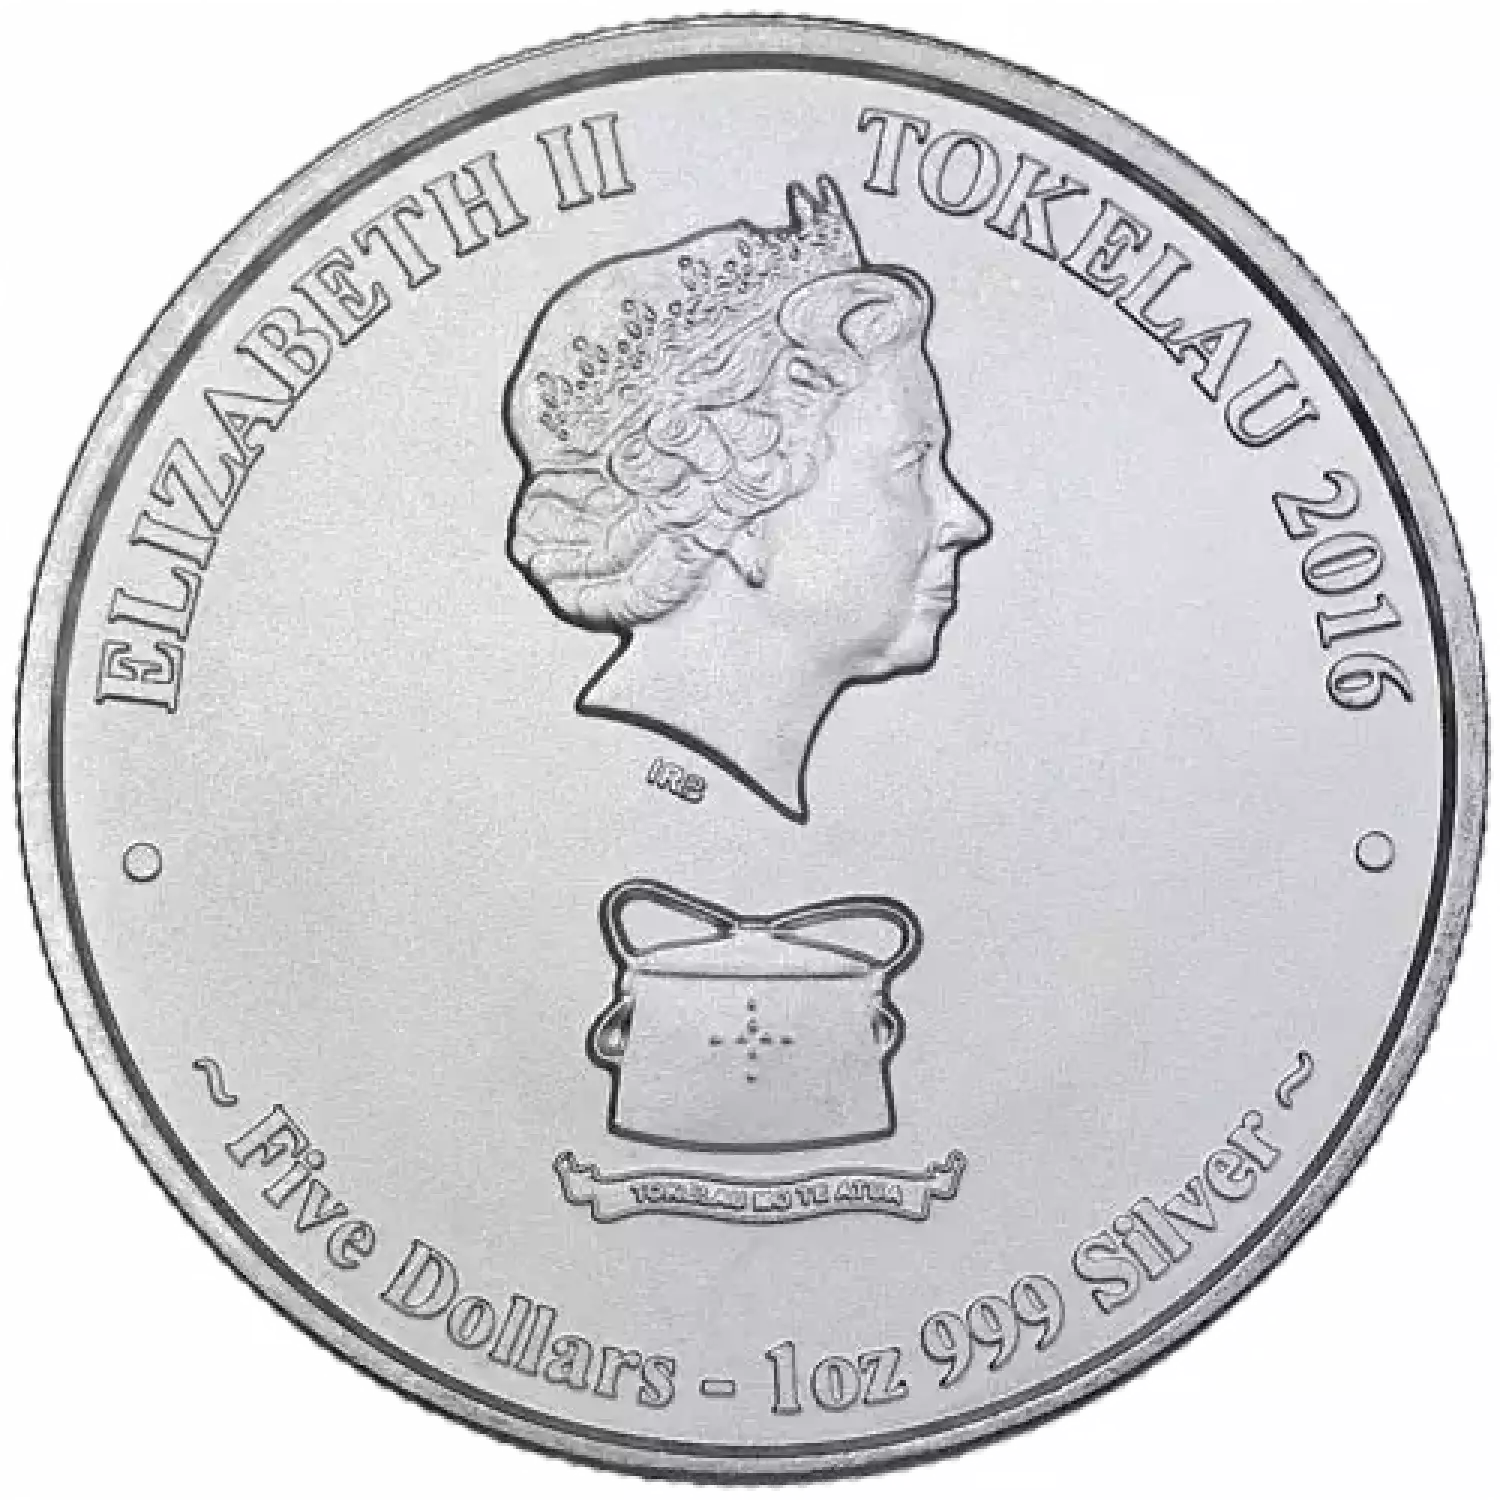 2016 1 oz Tokelau Silver Sailfish Coin (BU) (2)